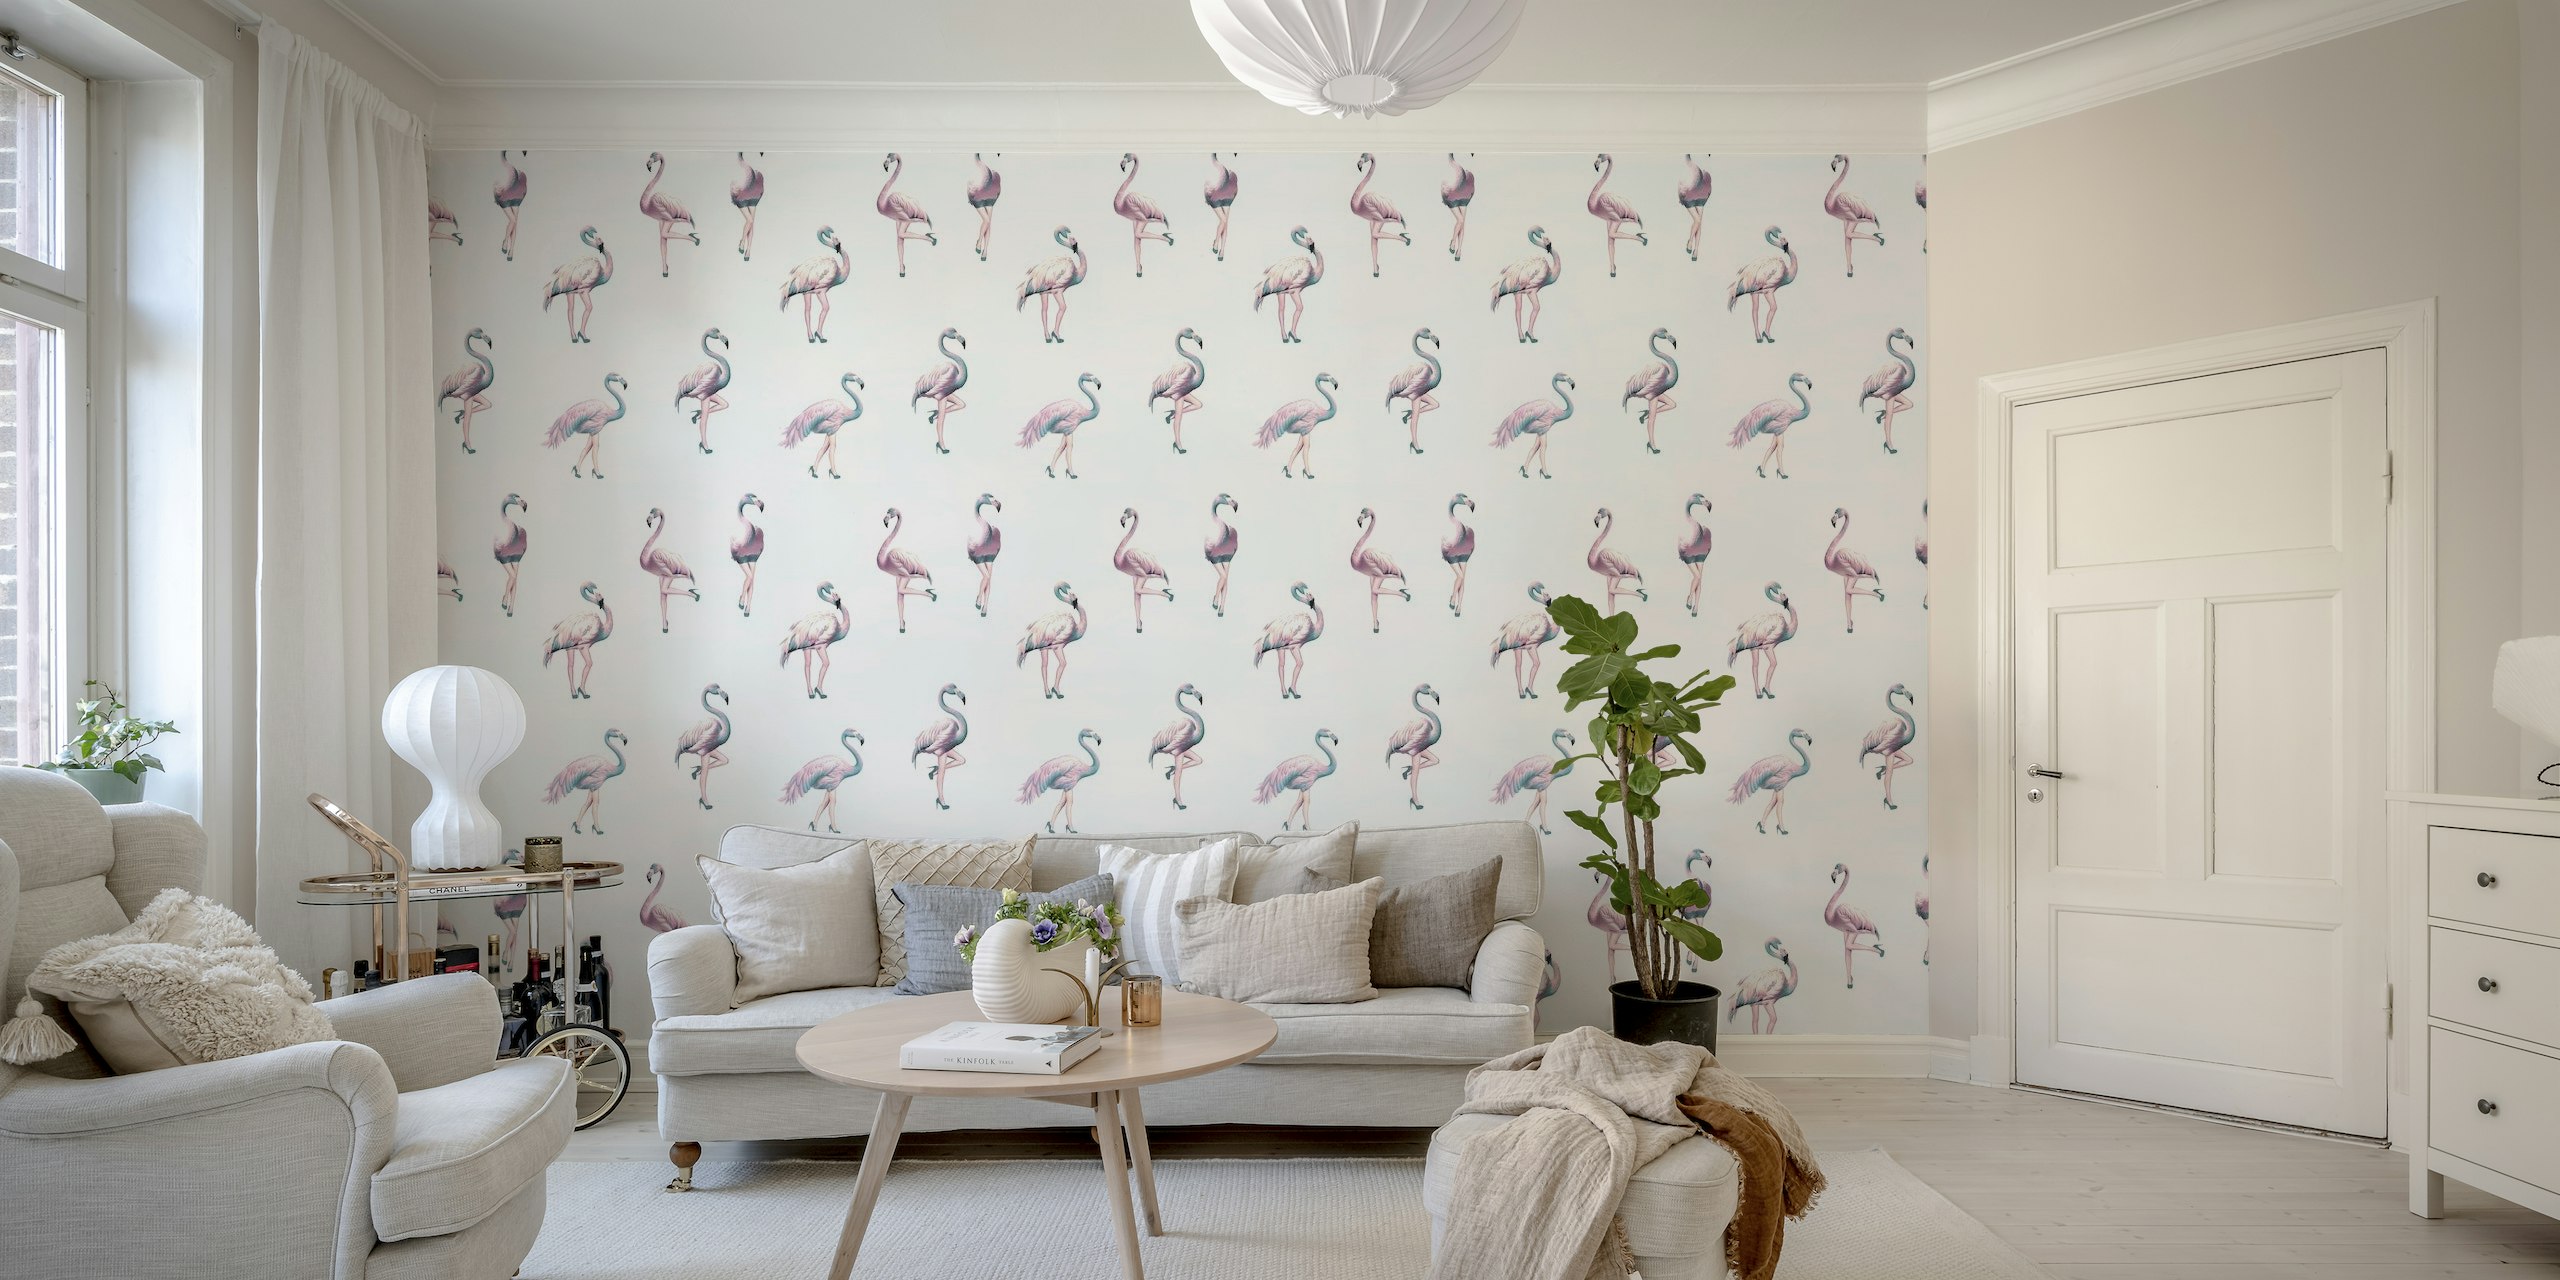 Tyylikäs flamingosiluettinen seinämaalaus vesisinisen, vaaleanpunaisen ja sinivihreän sävyissä.